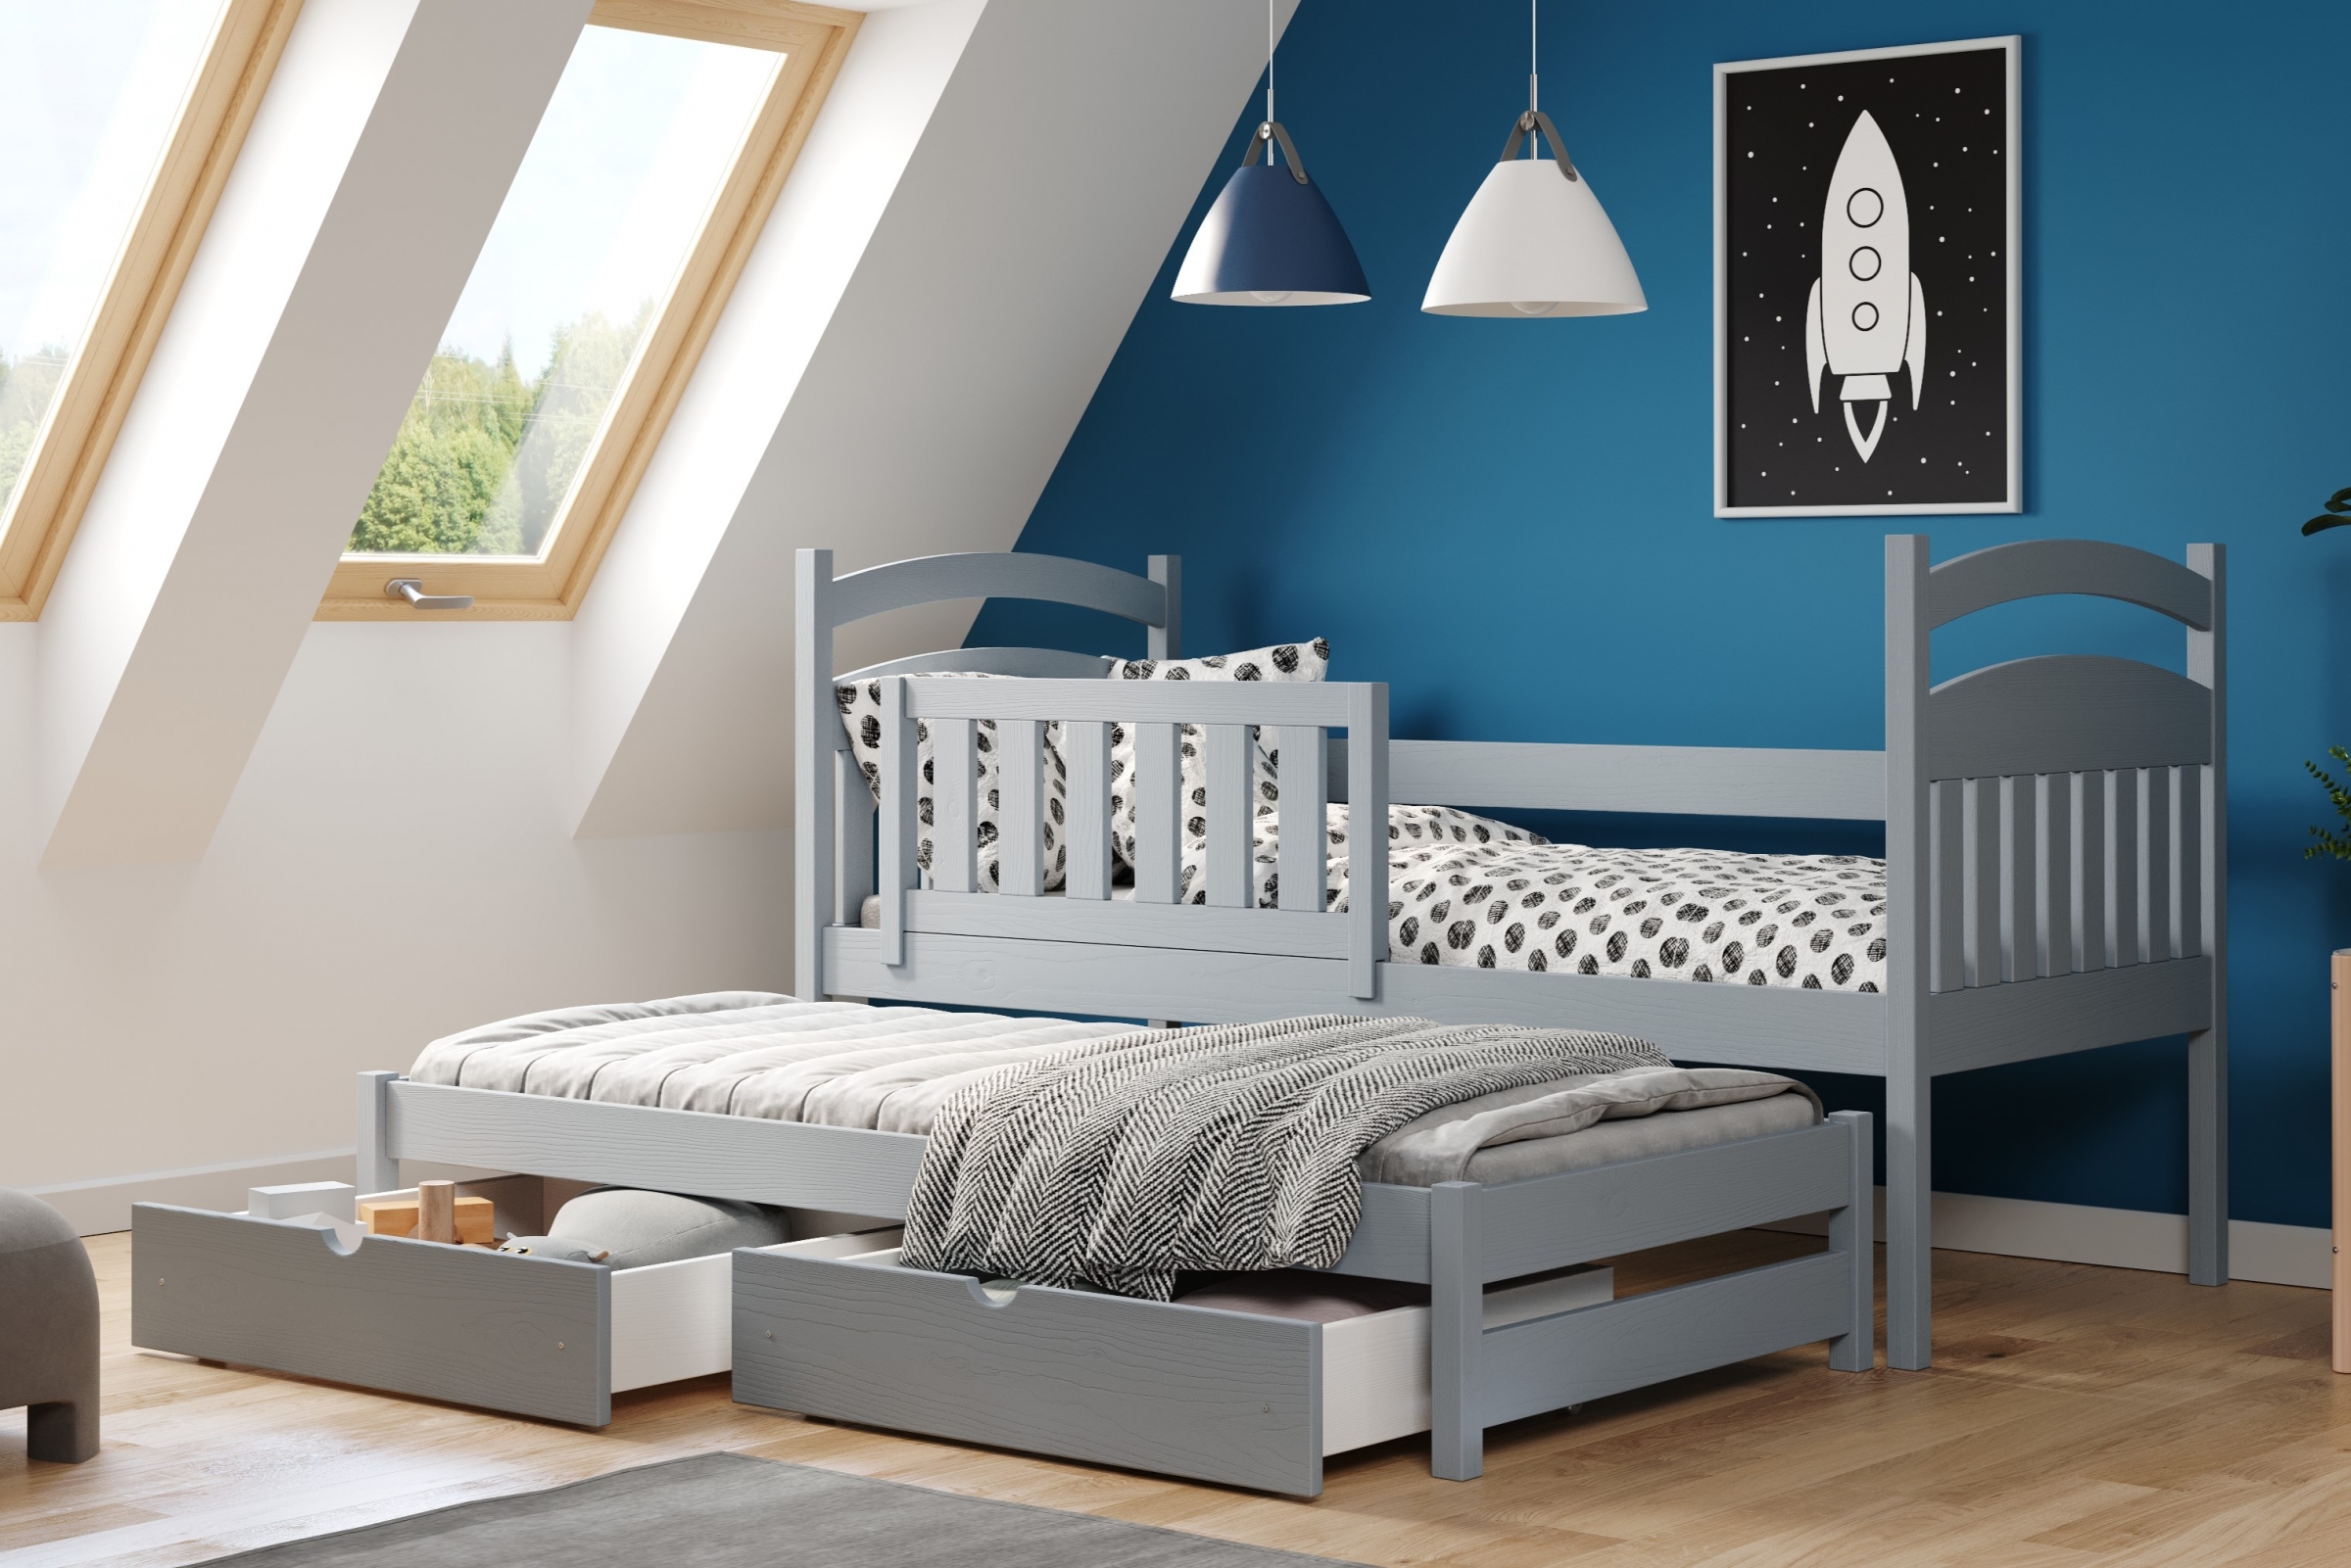 Detská posteľ prízemná výsuvna Amely - Farba šedý, rozmer 80x200 Posteľ dzieciece prízemná s výsuvným lôžkom Amely - Farba šedý - vizualizácia